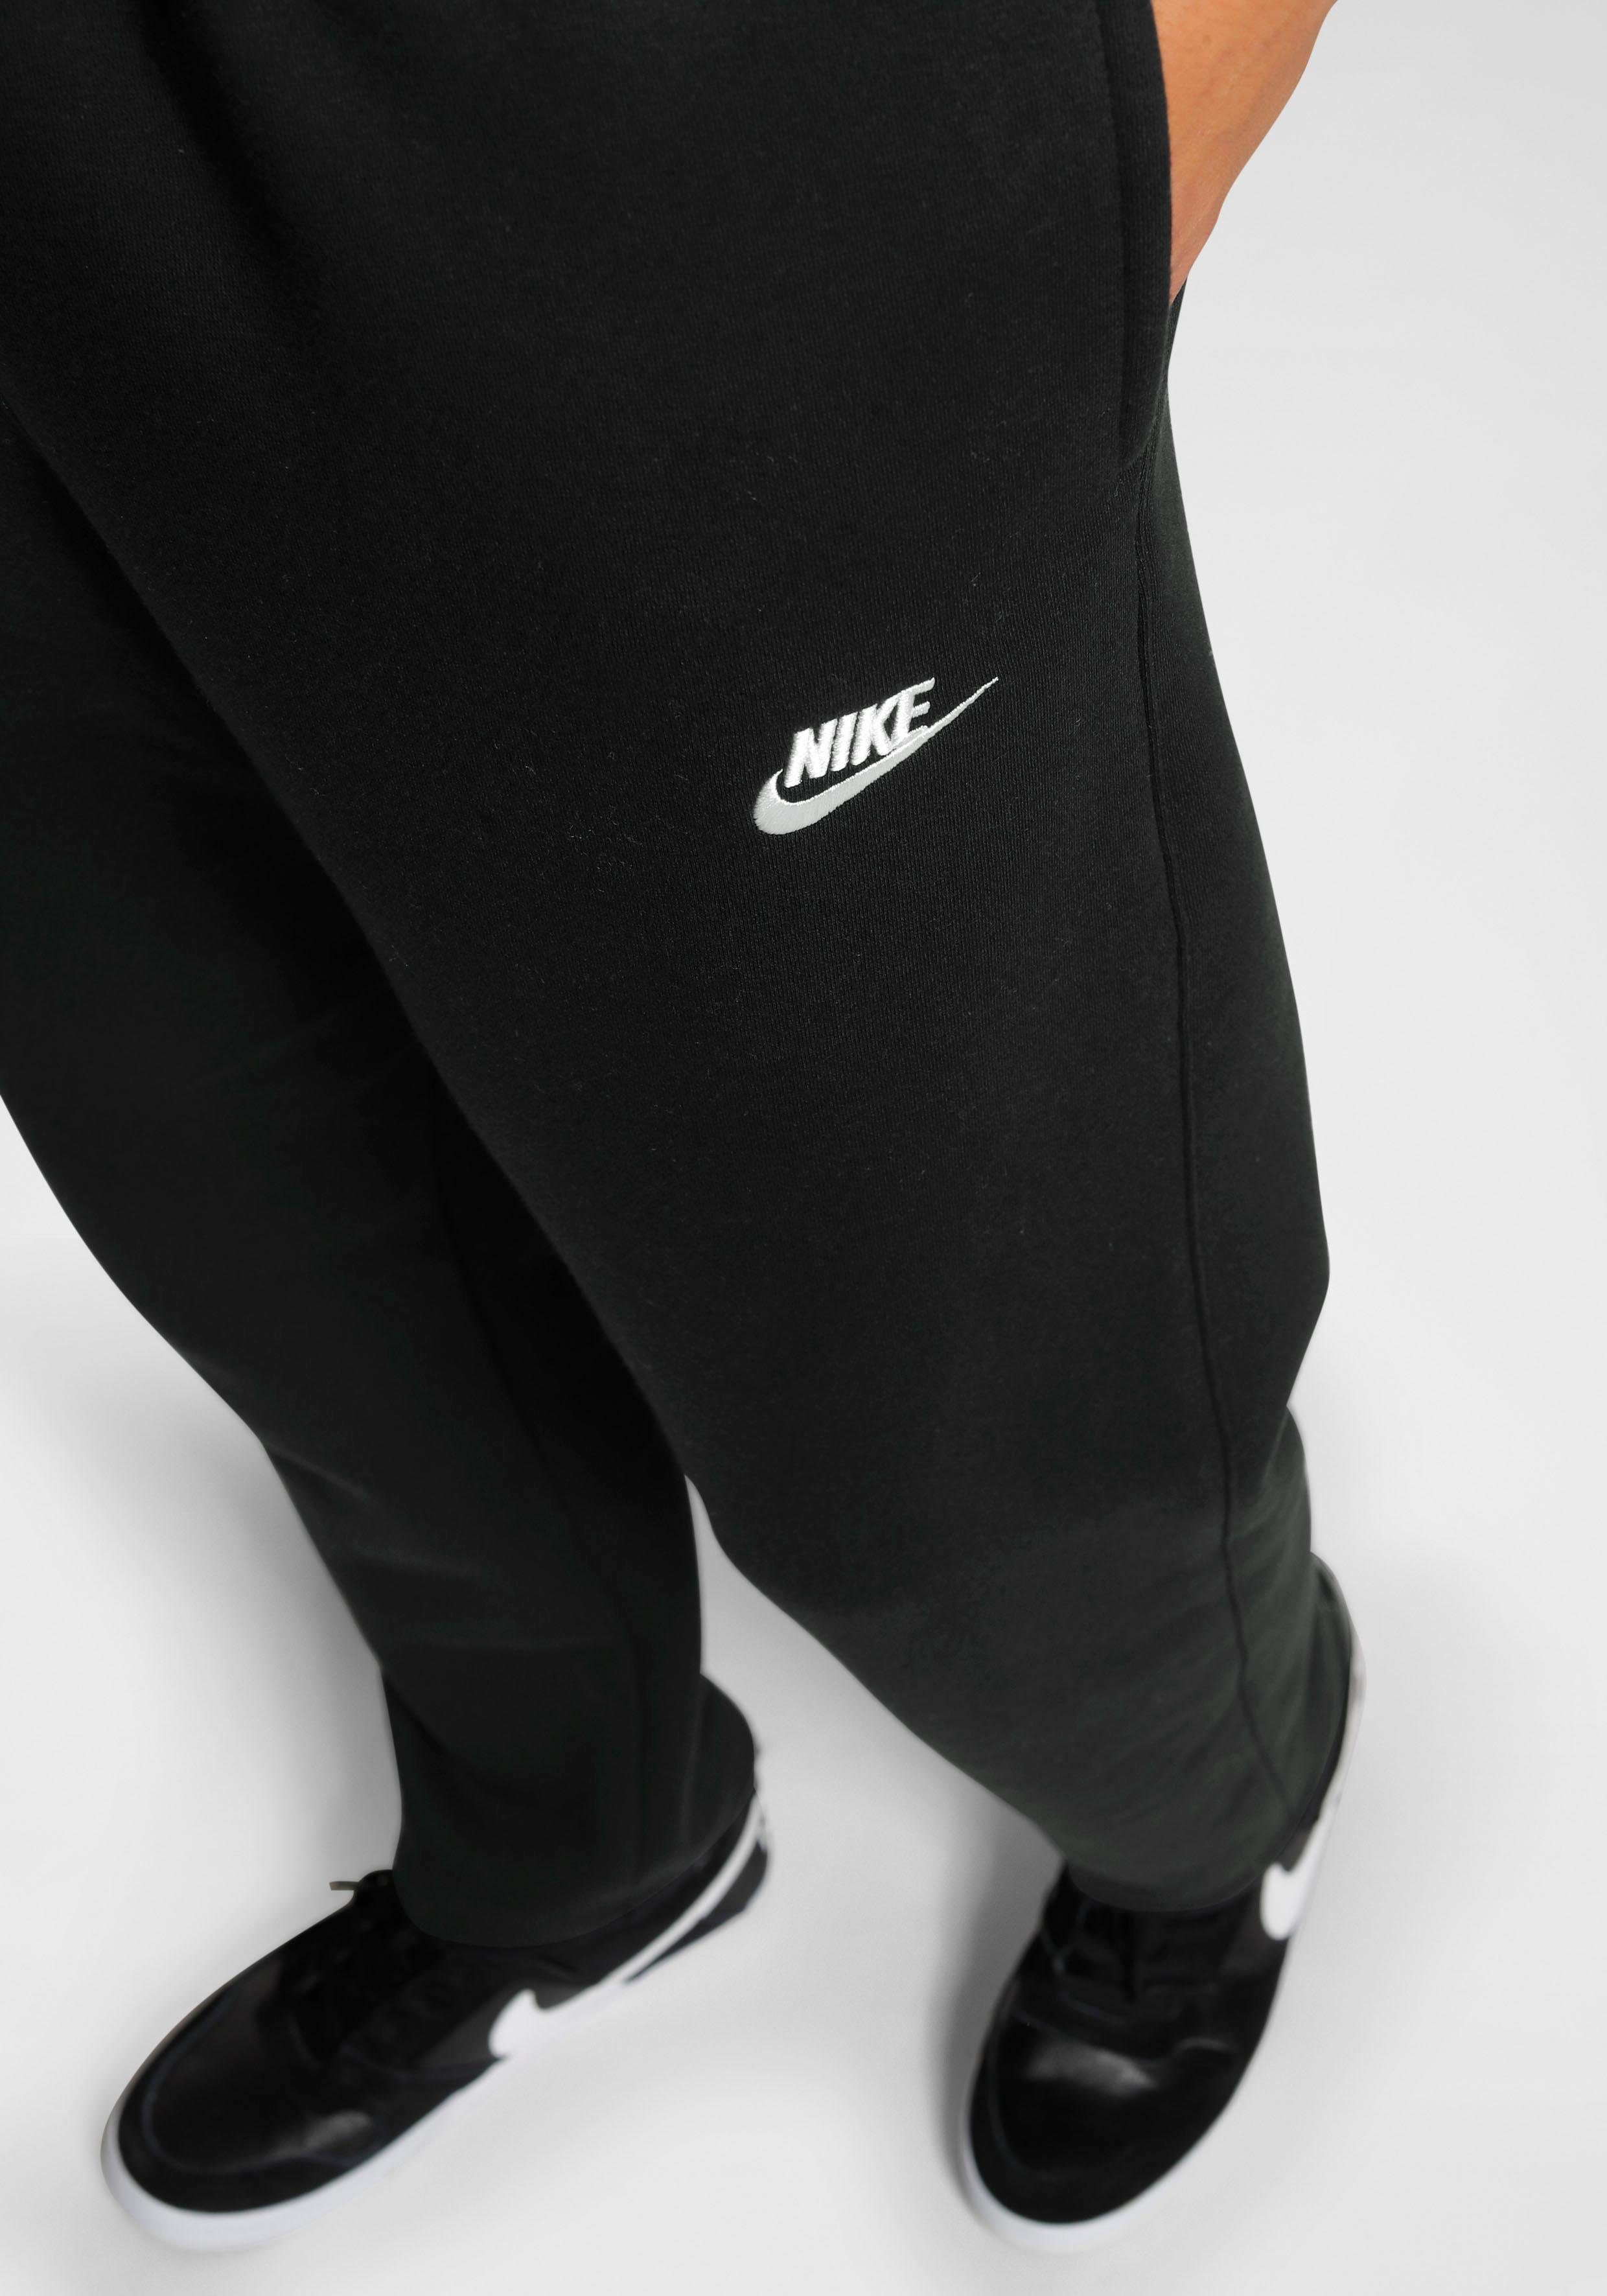 Nike Sportswear Jogginghose Club Fleece Pants schwarz Men's